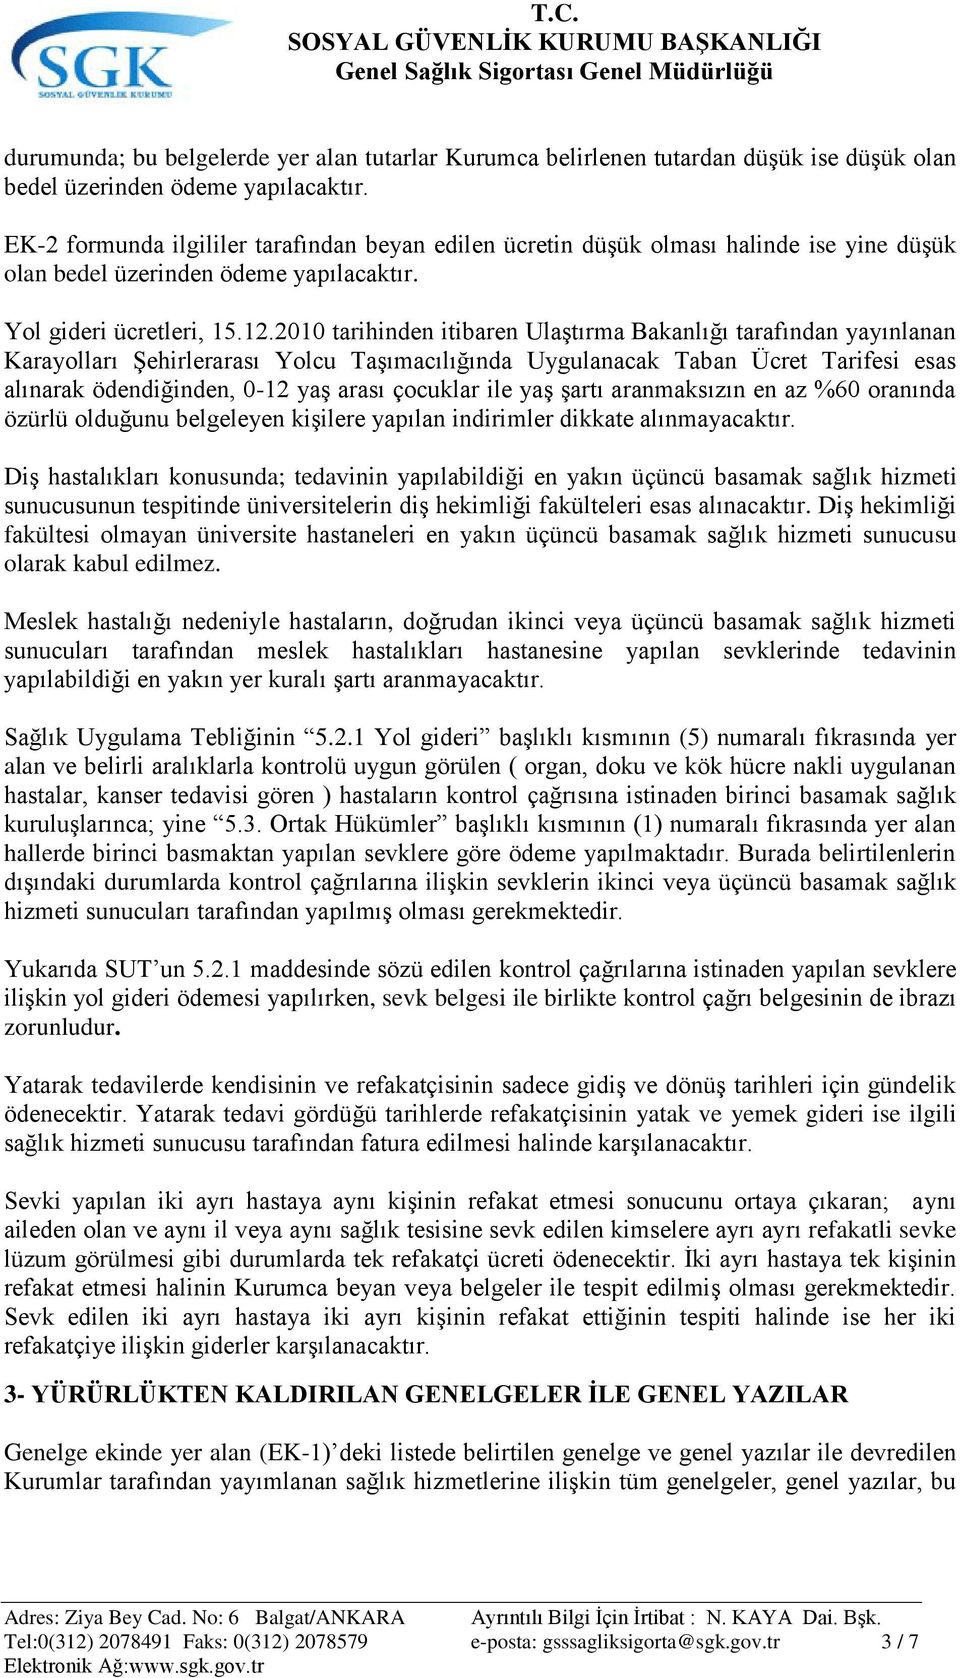 2010 tarihinden itibaren UlaĢtırma Bakanlığı tarafından yayınlanan Karayolları ġehirlerarası Yolcu TaĢımacılığında Uygulanacak Taban Ücret Tarifesi esas alınarak ödendiğinden, 0-12 yaģ arası çocuklar